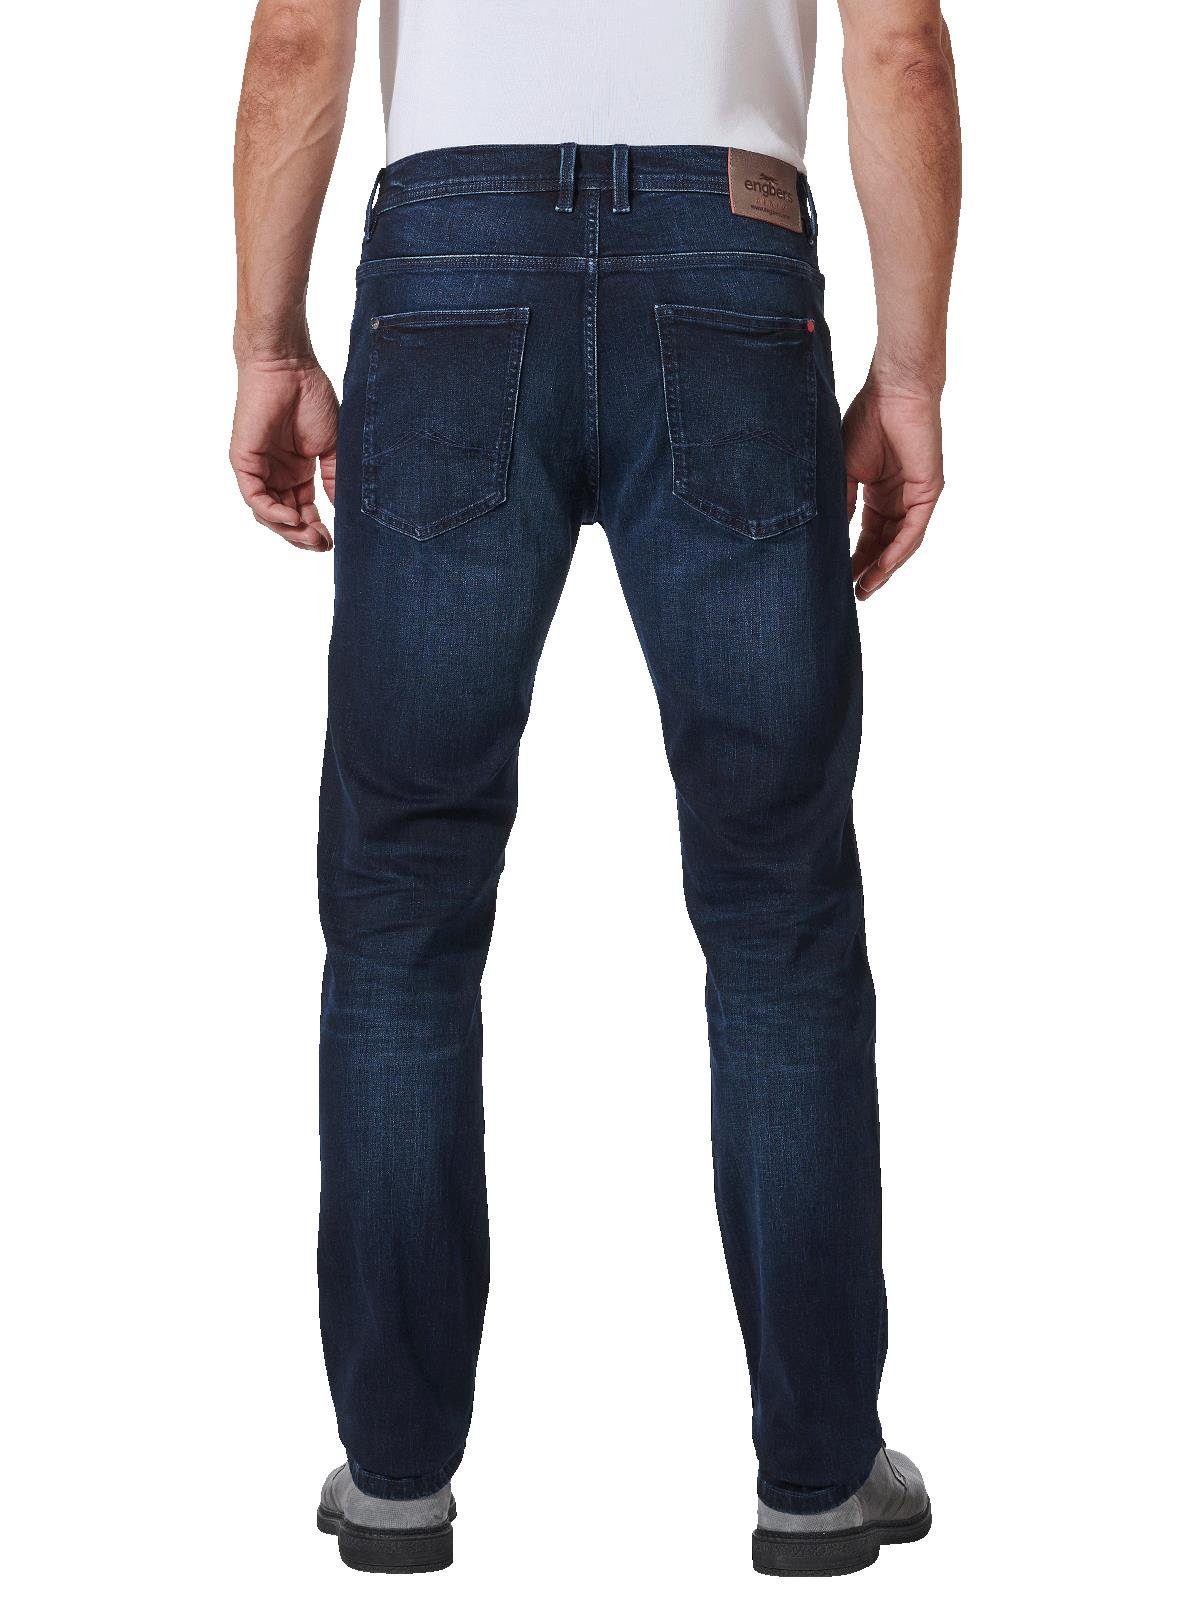 Engbers Stretch-Jeans Super-Stretch-Jeans fit slim